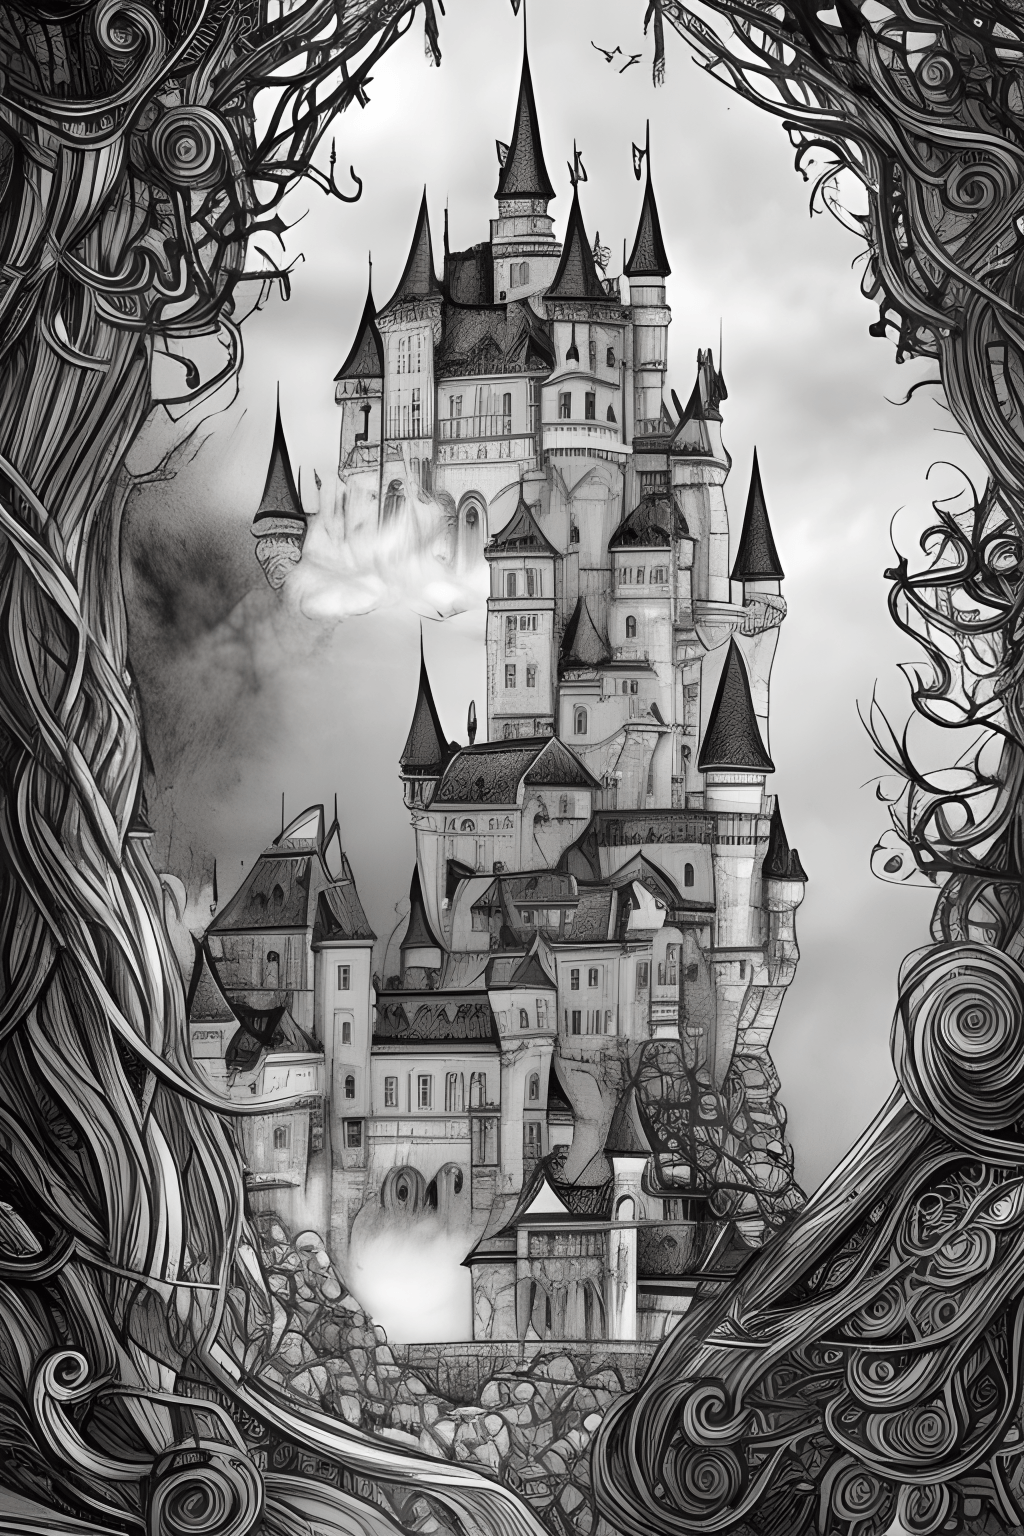 fairy tale castle drawing